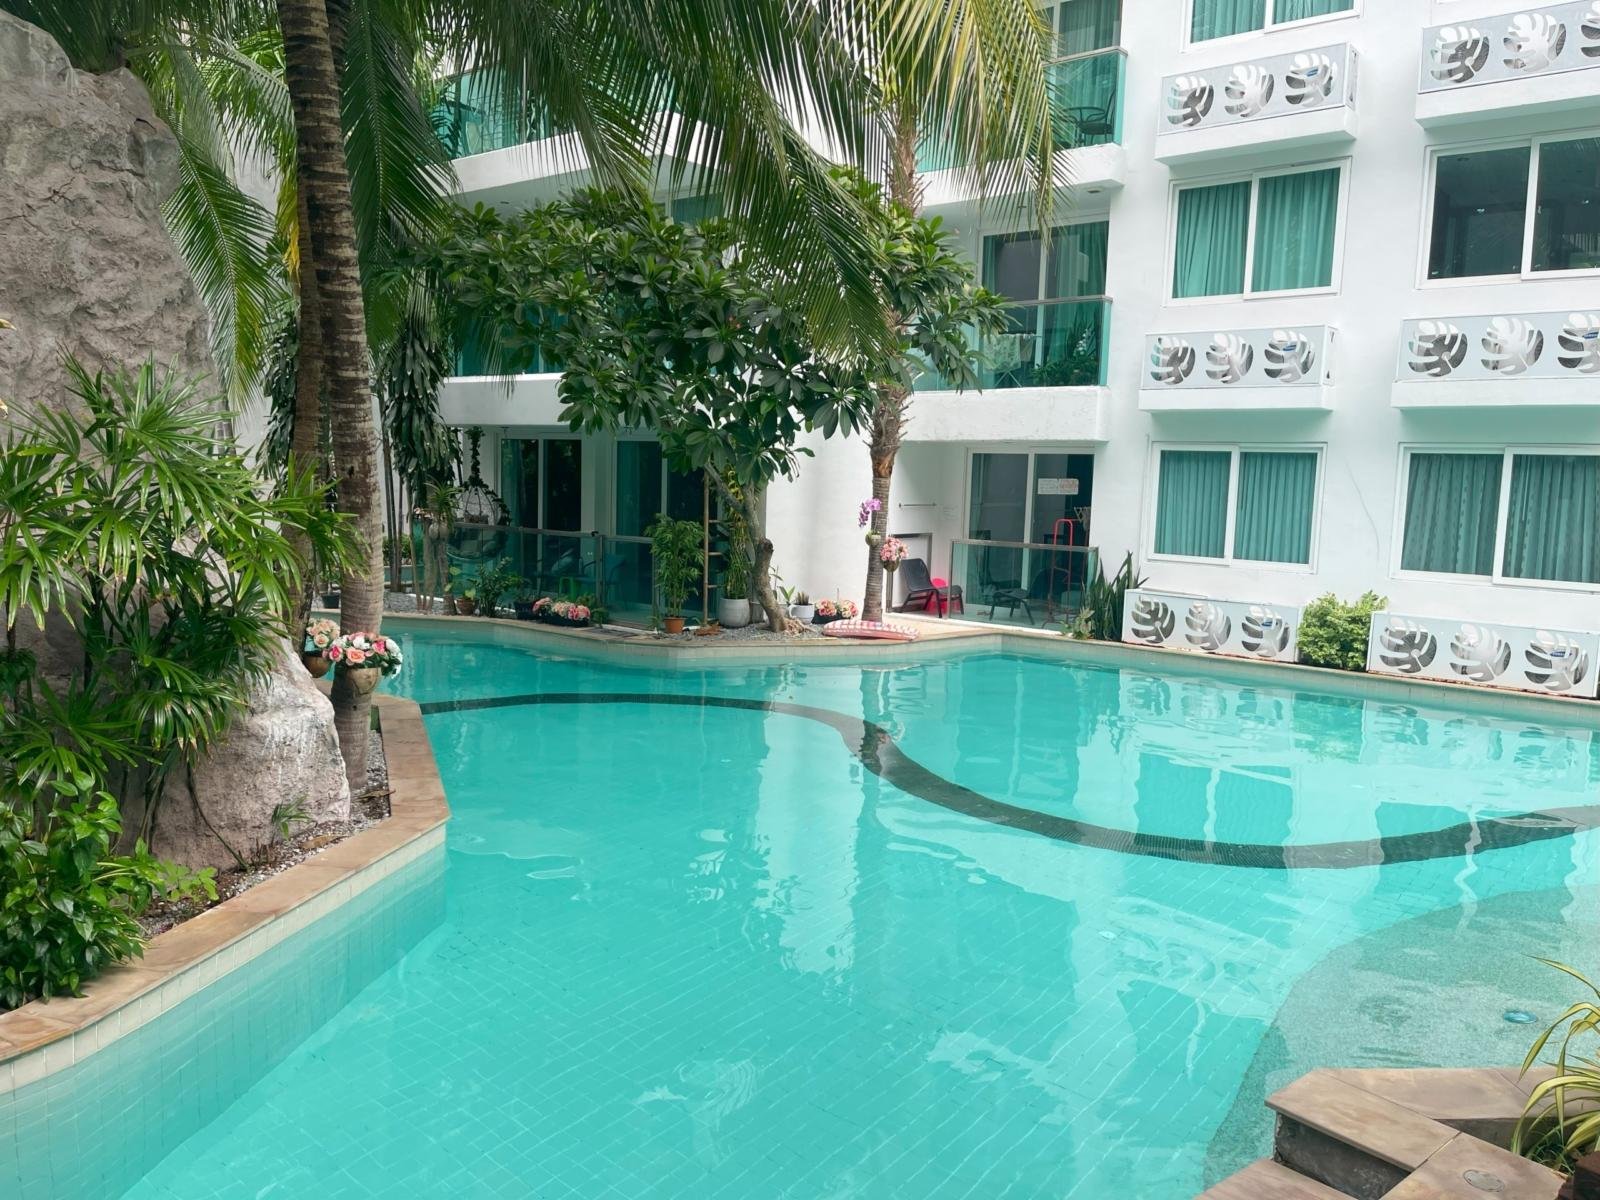 Rent Amazon Jomtien 1 bedroom Rent one bedroom Pattaya